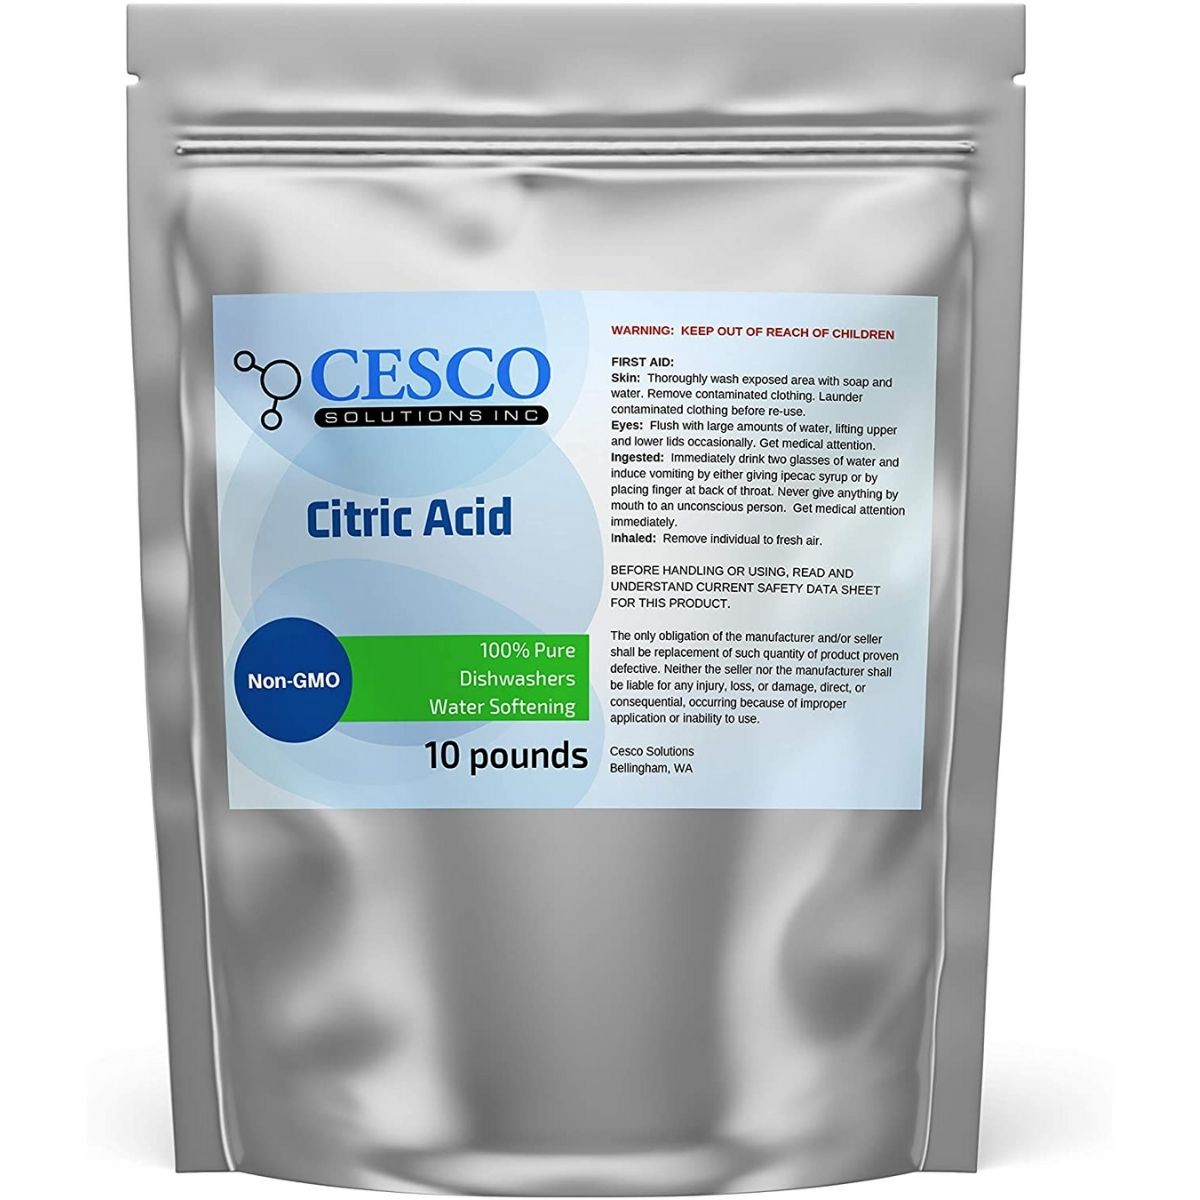 The Best CO2 Reactor Option: Cesco Solutions Citric Acid